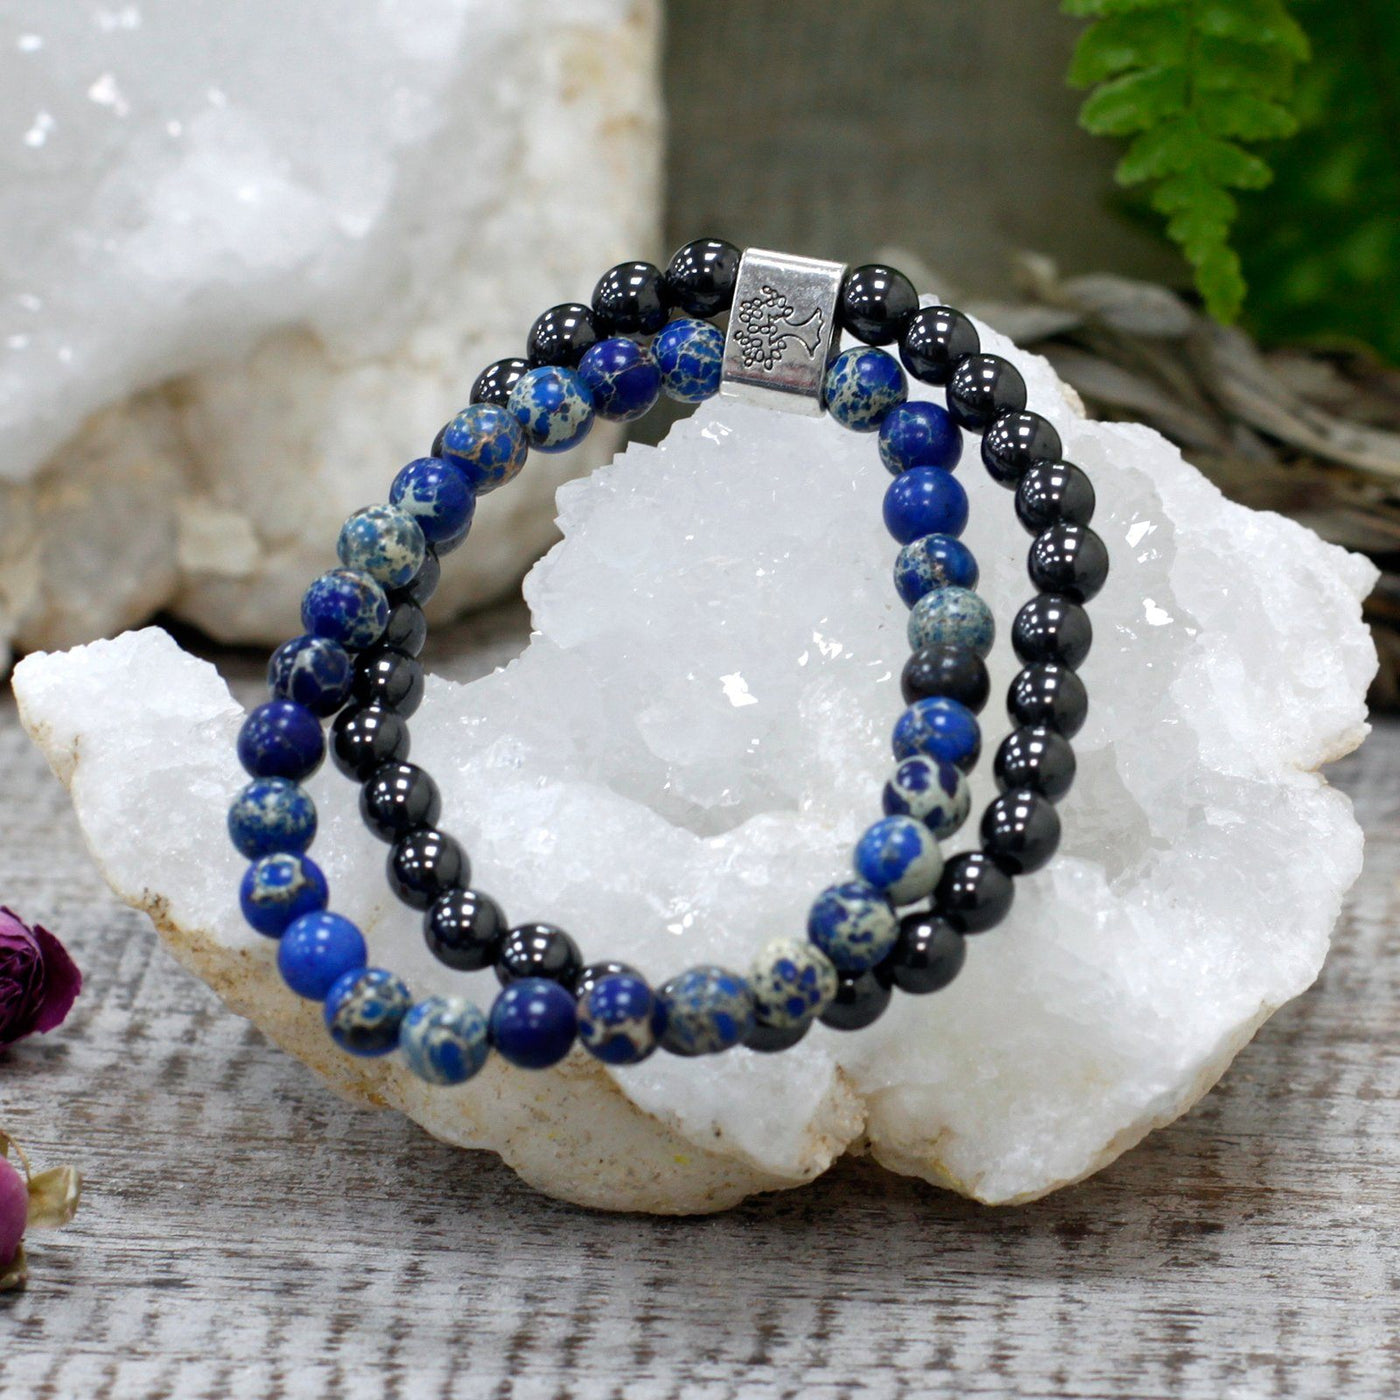 Unisex Tree Of Life Magnetic Sodalite Gemstone Bracelet Set With Blue, Grey Black Gemstones